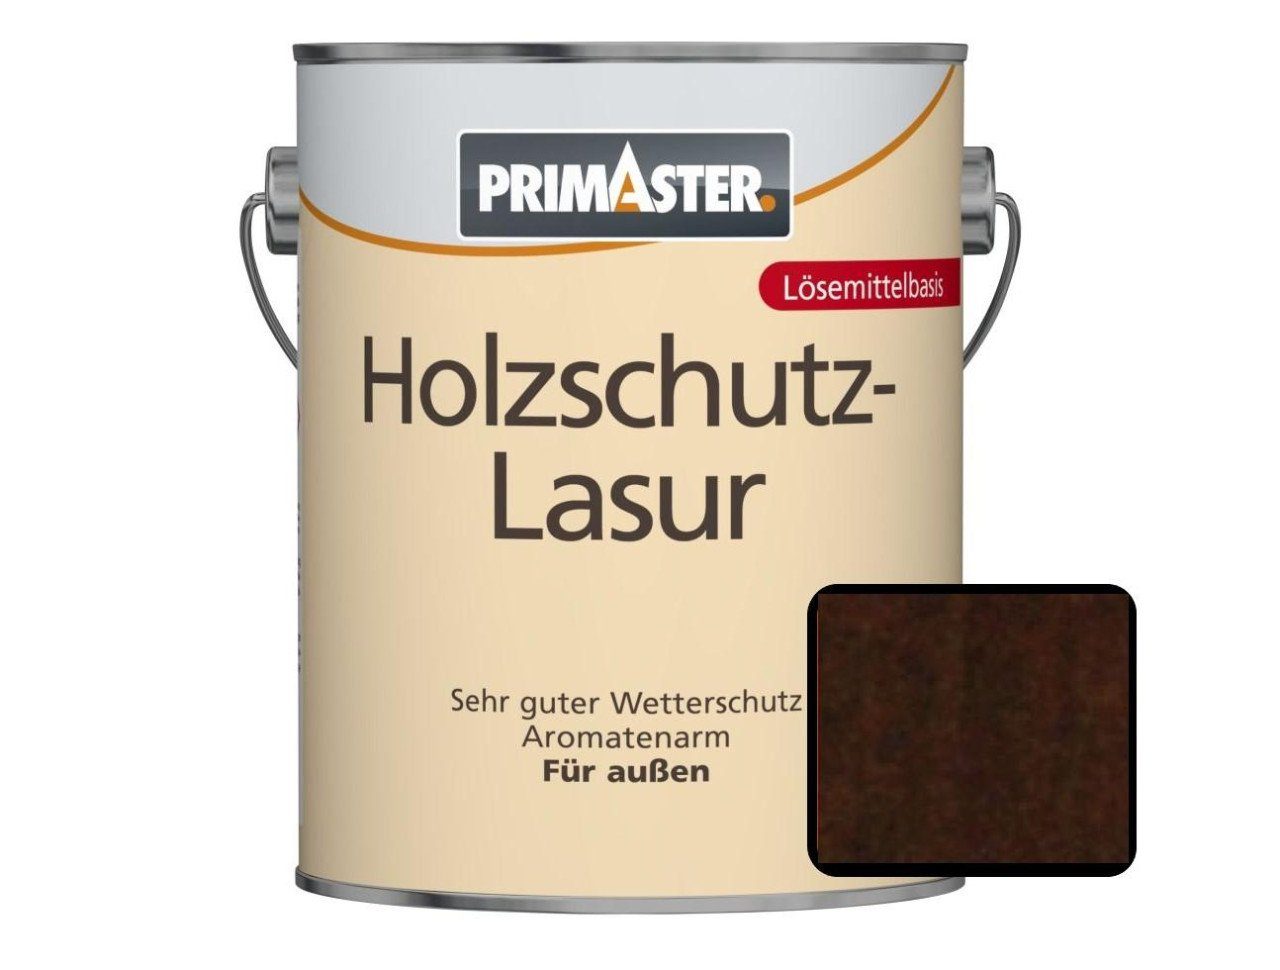 750 Lasur ml Primaster nussbaum Primaster Holzschutzlasur